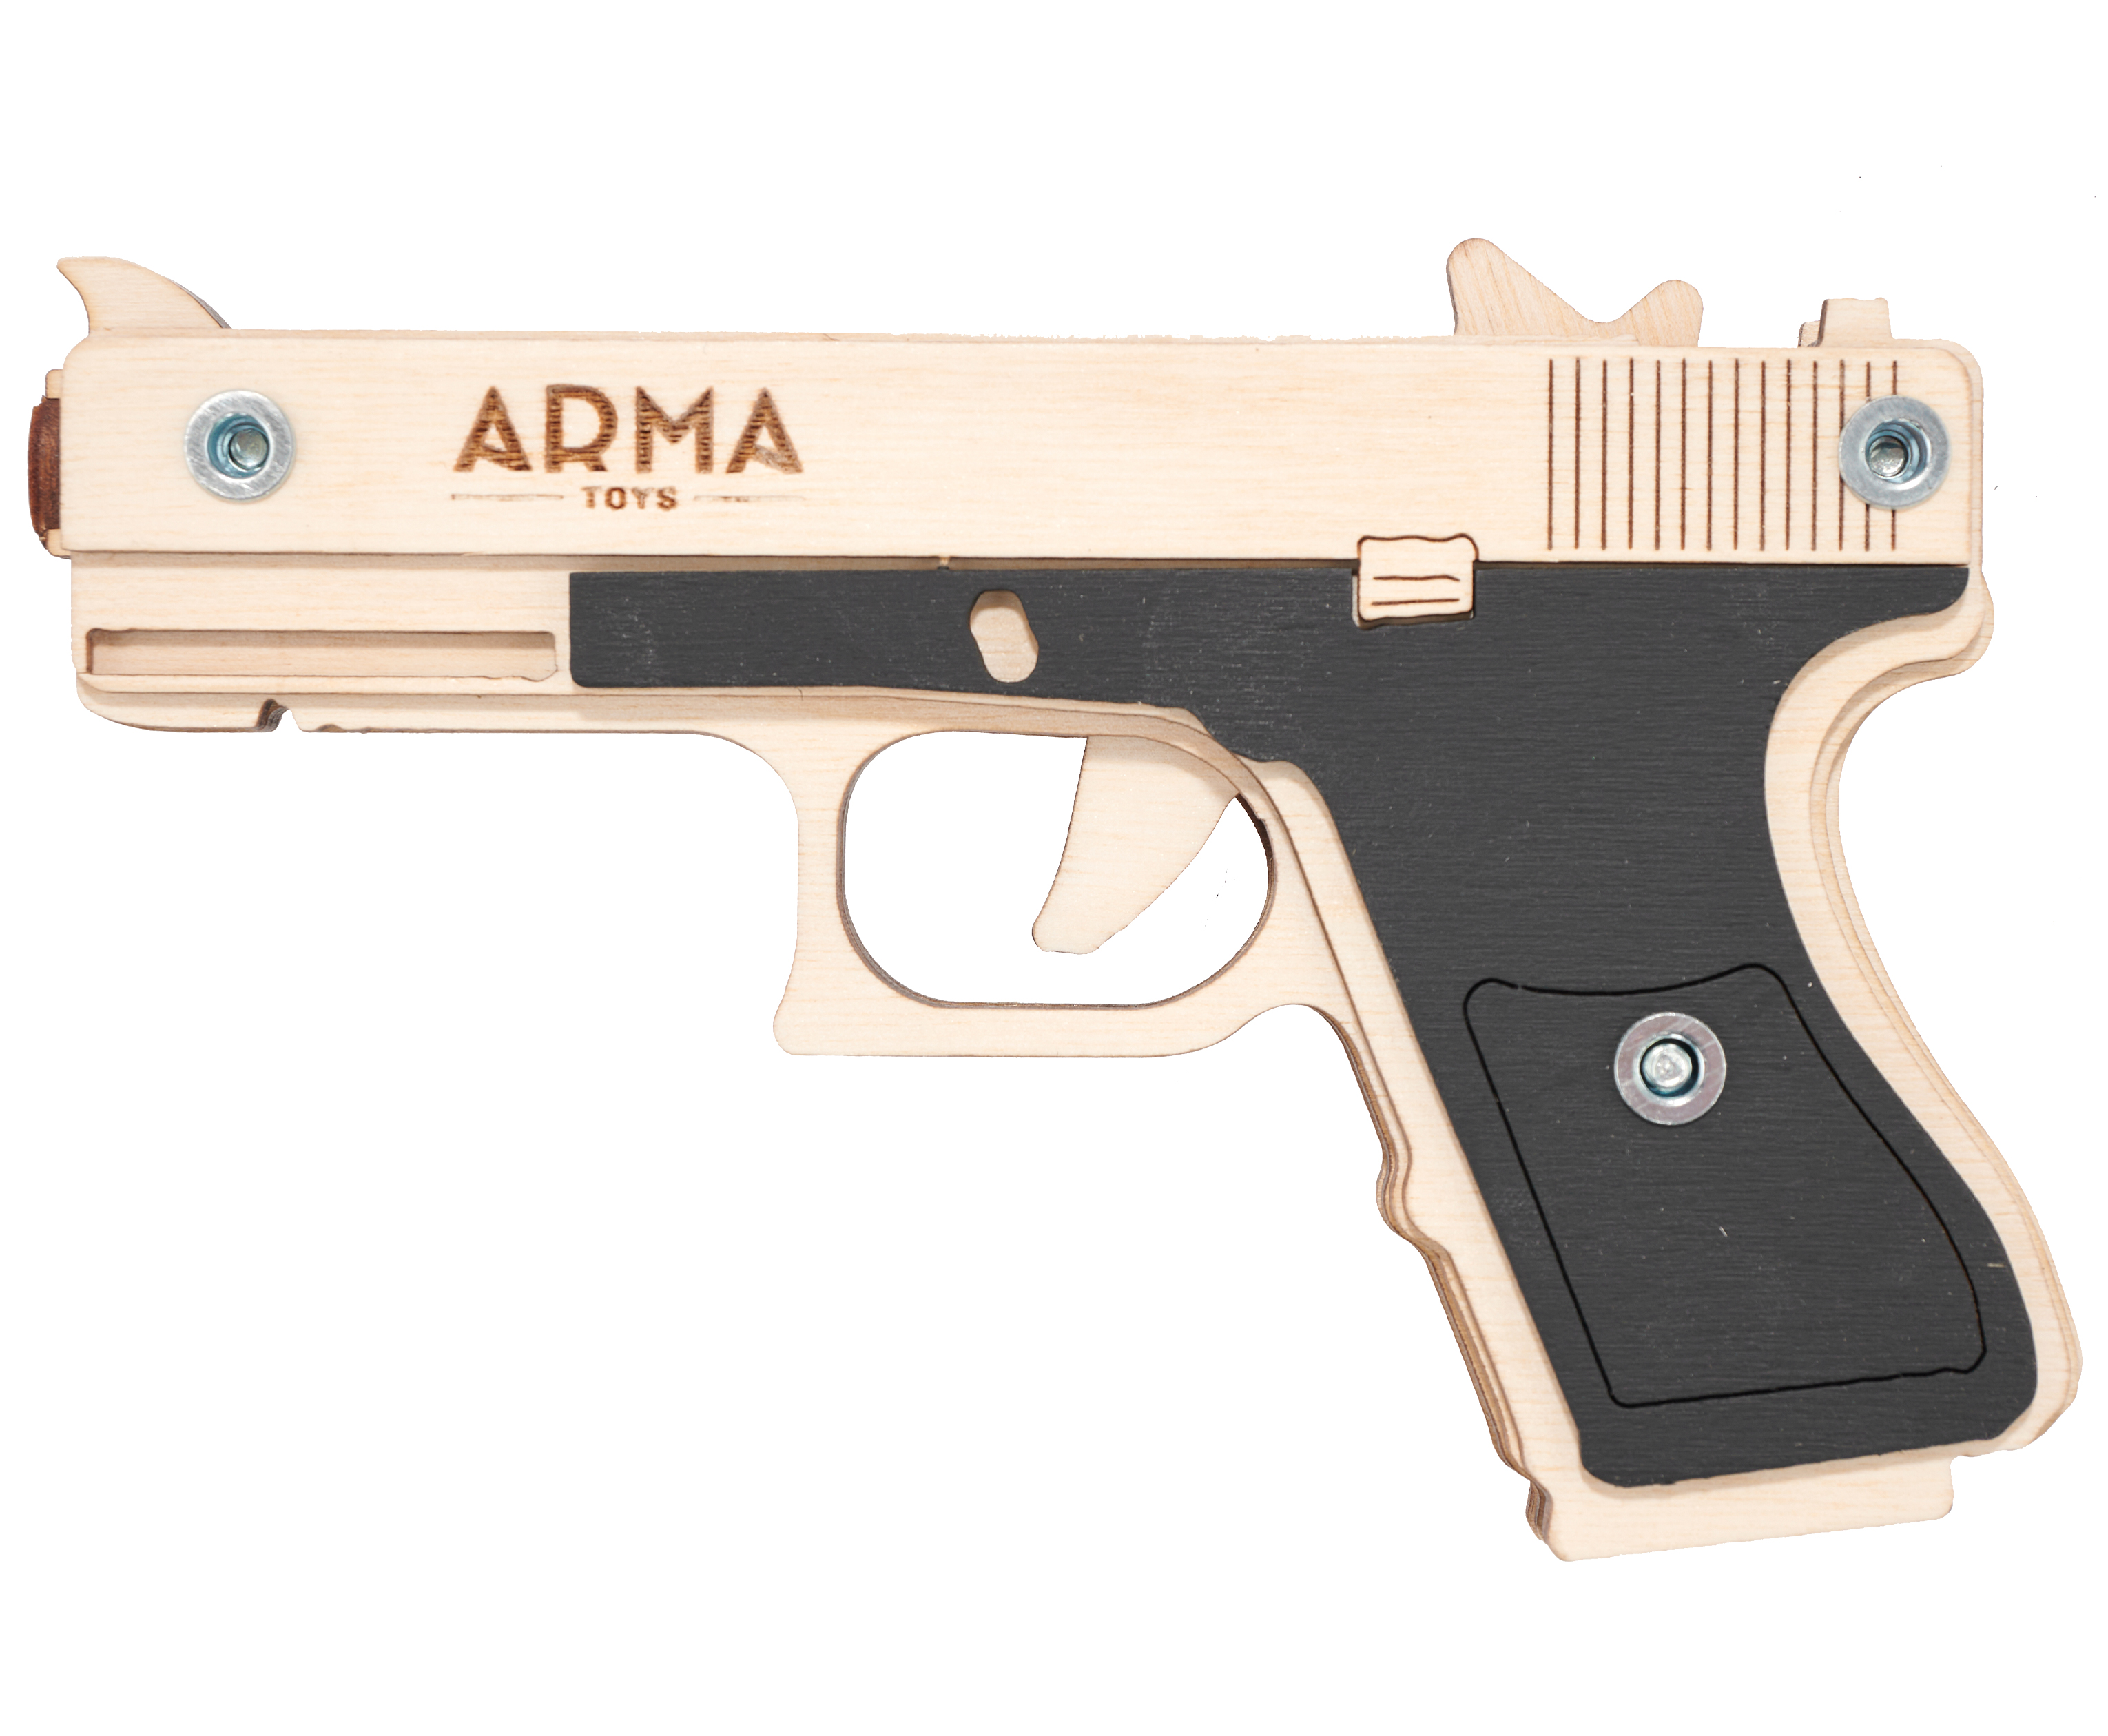 Резинкострел игрушечный Arma toys пистолет Glock Light макет, Глок 26, AT027, окрашенный деревянная игрушка lemmo конструктор пистолет резинкострел бластер